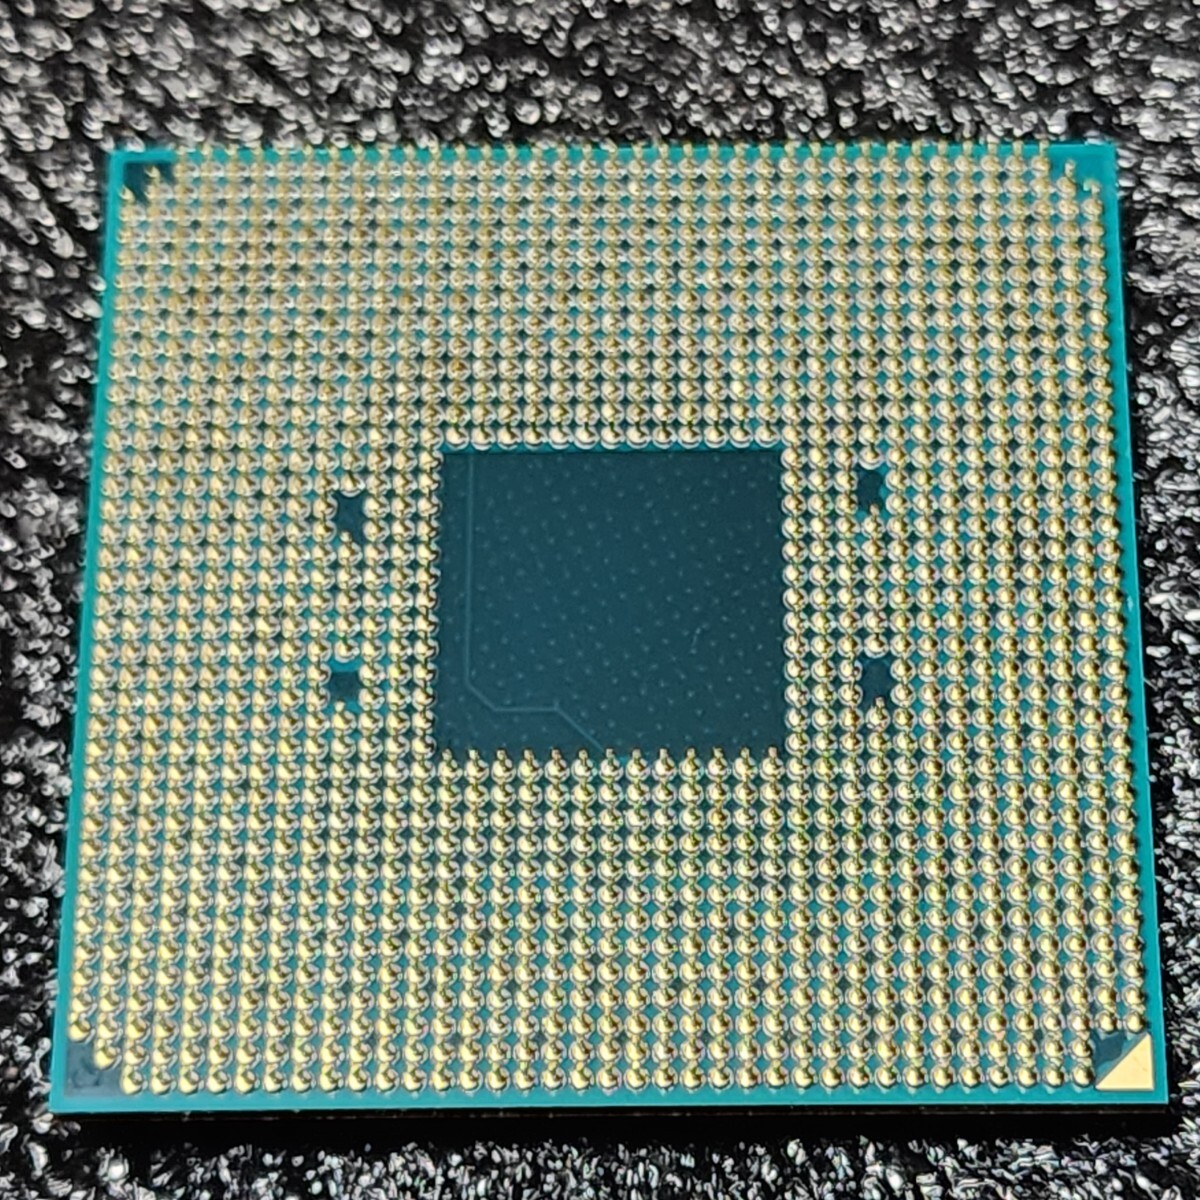 CPU AMD RYZEN5 1600 3.2GHz 6コア12スレッド Socket AM4 Wraith Spire付属 PCパーツ 動作確認済みの画像5